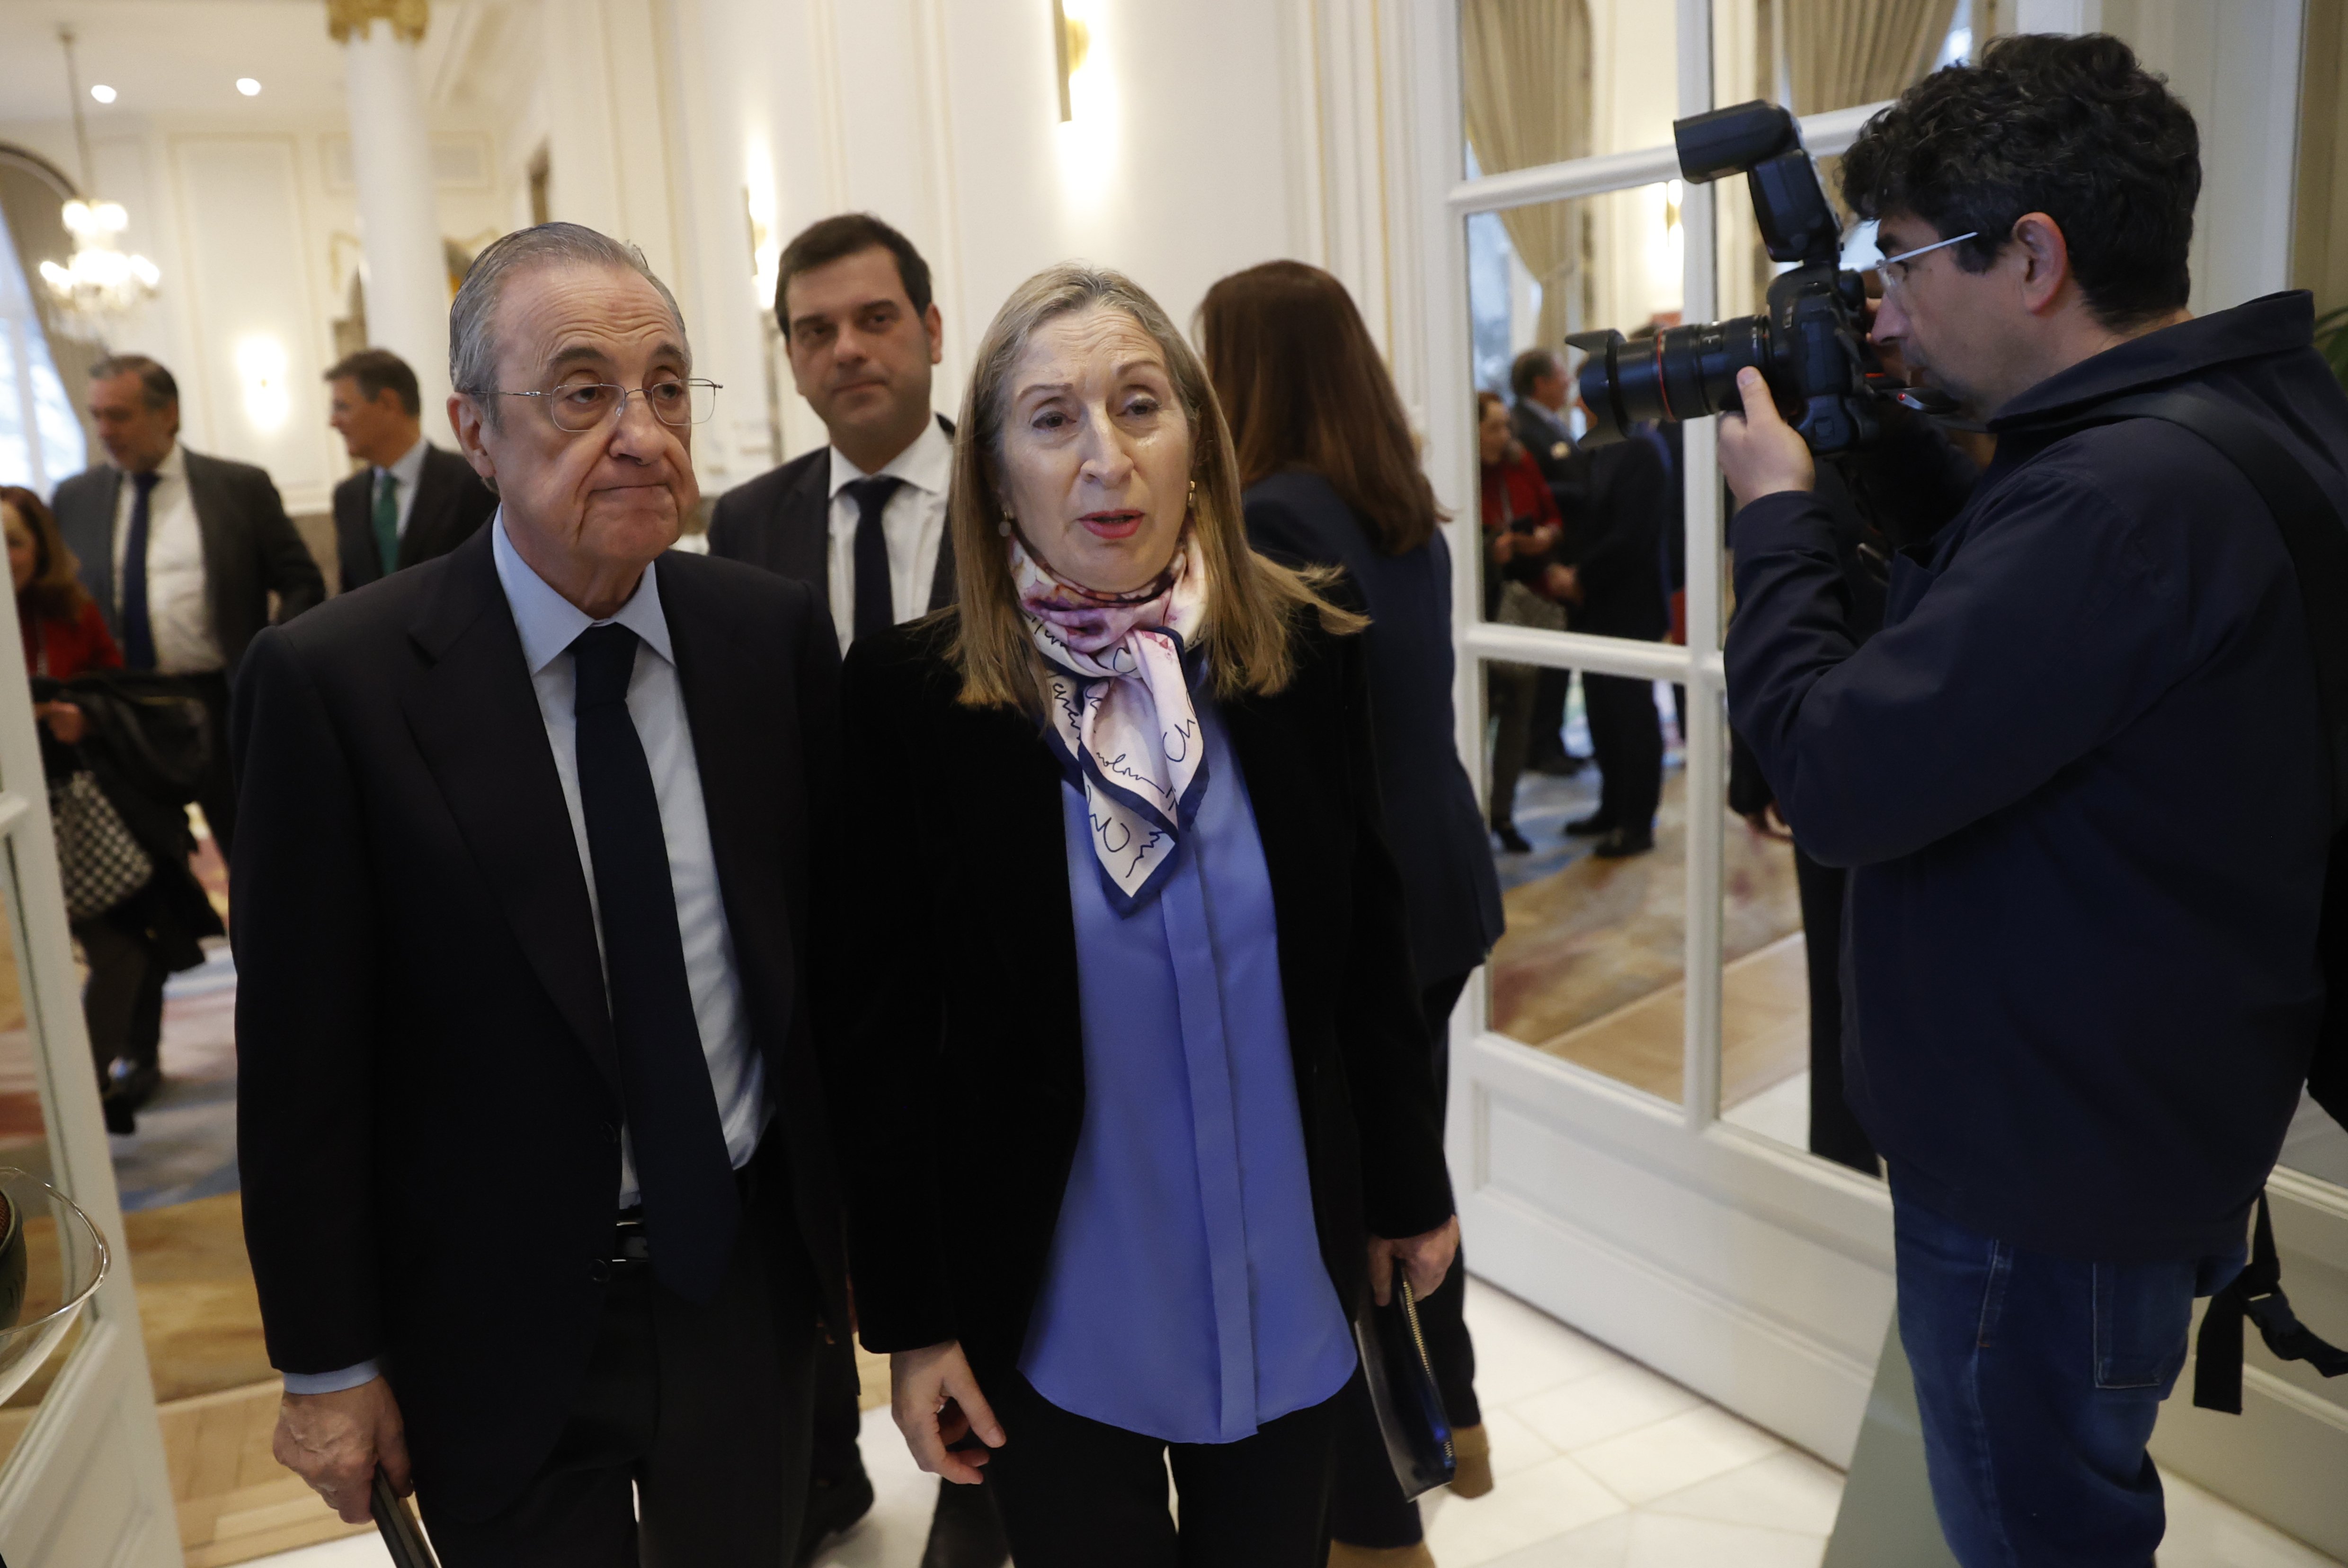 Florentino Pérez, alertat de greus problemes fora del Reial Madrid, dispara la preocupació